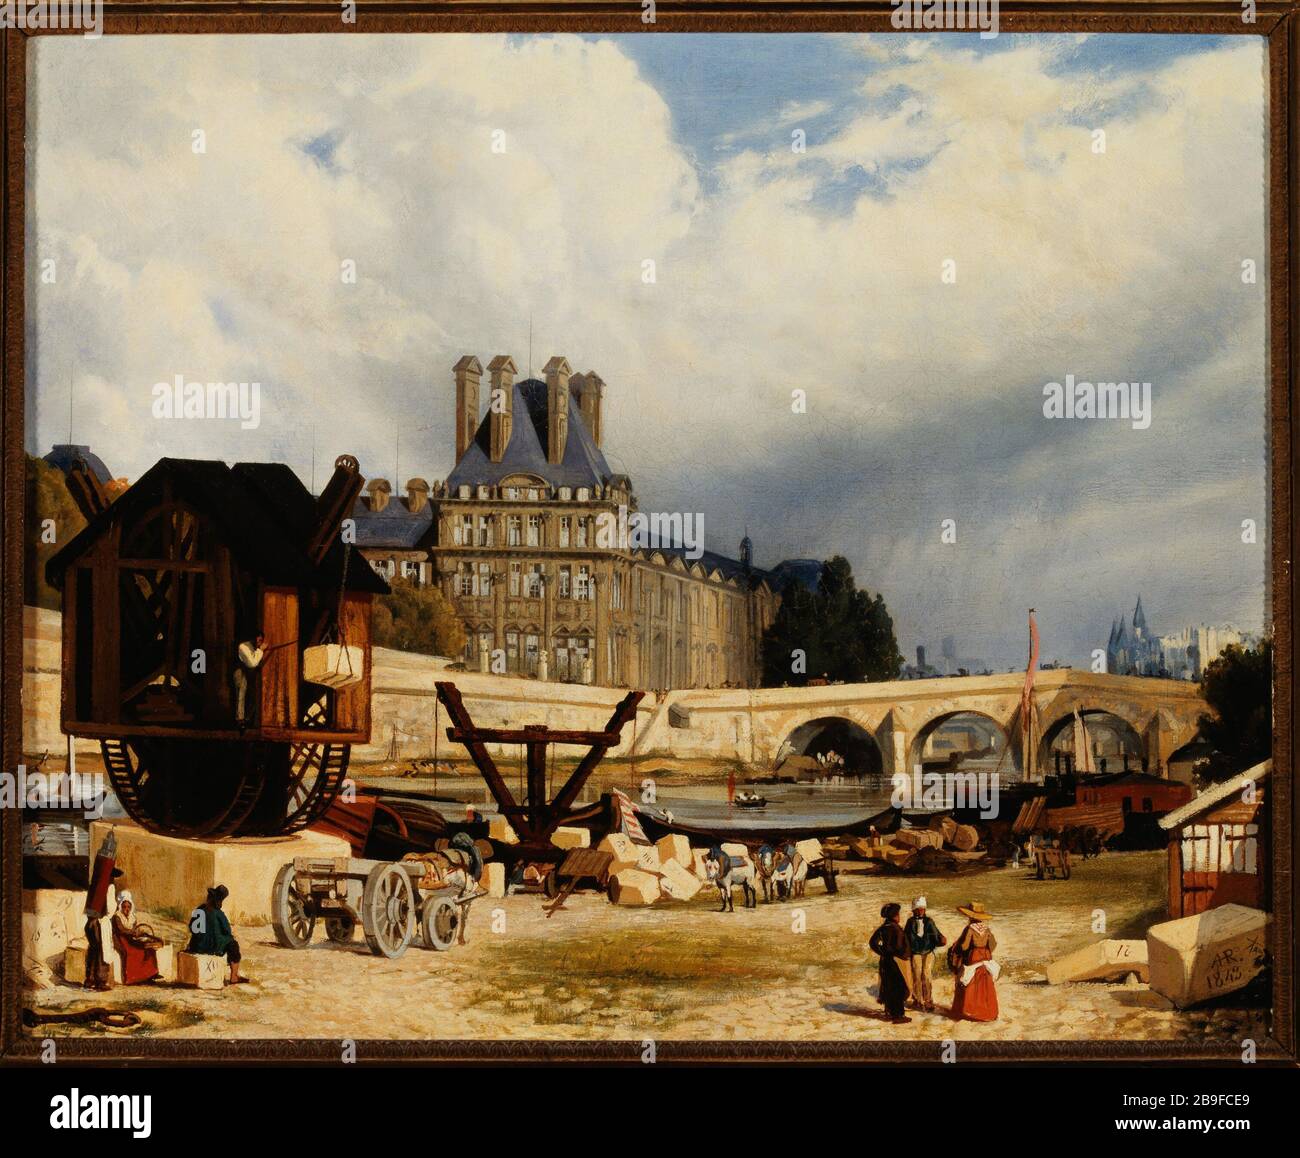 The Tuileries and the Pont Royal, in 1843 Arthur Henry Roberts (1819-1900?). Les Tuileries et le Pont Royal, en 1843. Huile sur toile. Paris (Ier arr.), 1843. Paris, musée Carnavalet. Stock Photo